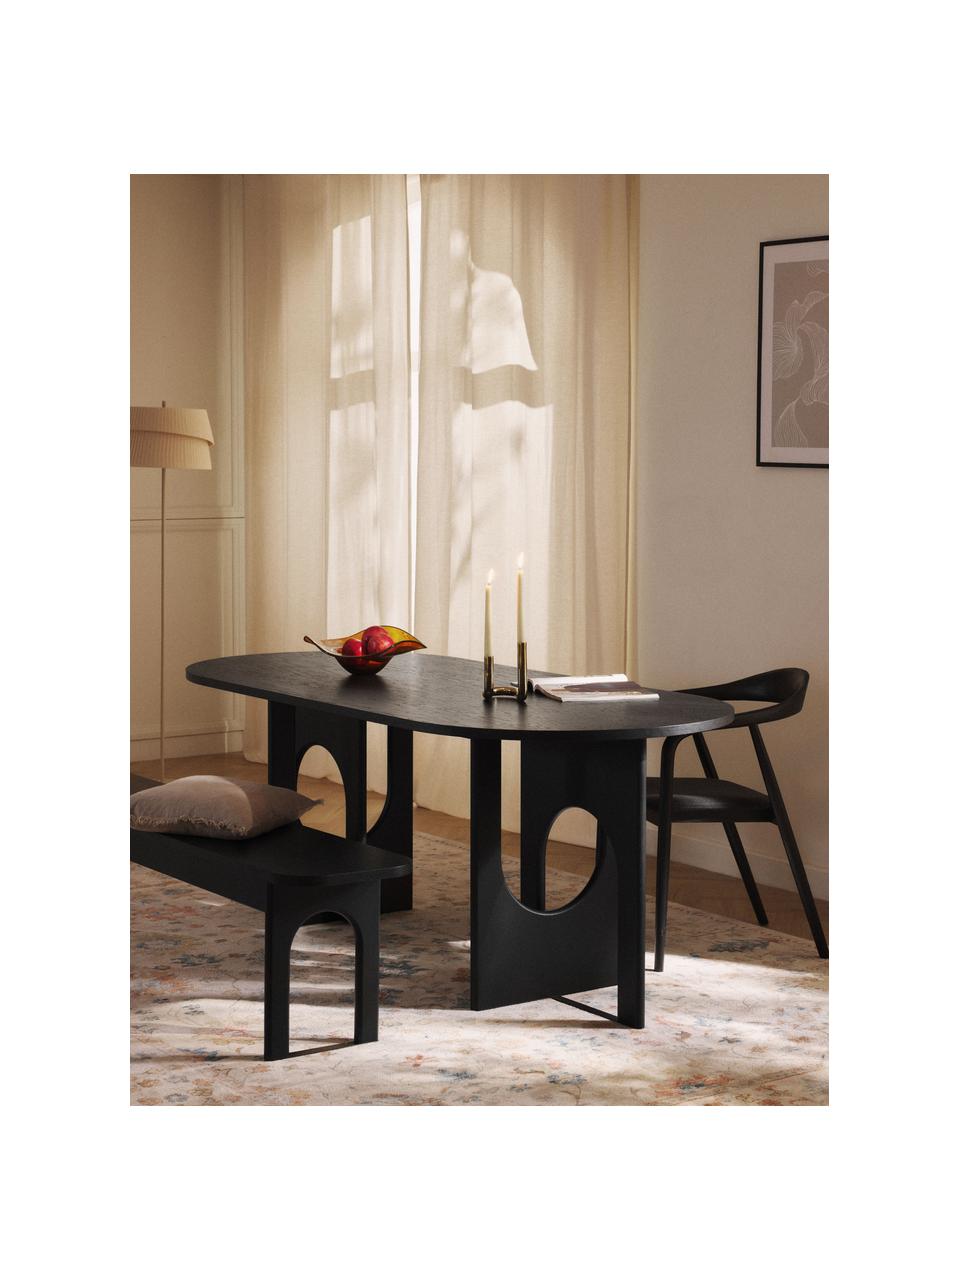 Ovaler Esstisch Apollo, in verschiedenen Grössen, Tischplatte: Eichenholzfurnier, lackie, Beine: Eichenholz, lackiert, Met, Eichenholz, schwarz lackiert, B 200 x T 90 cm